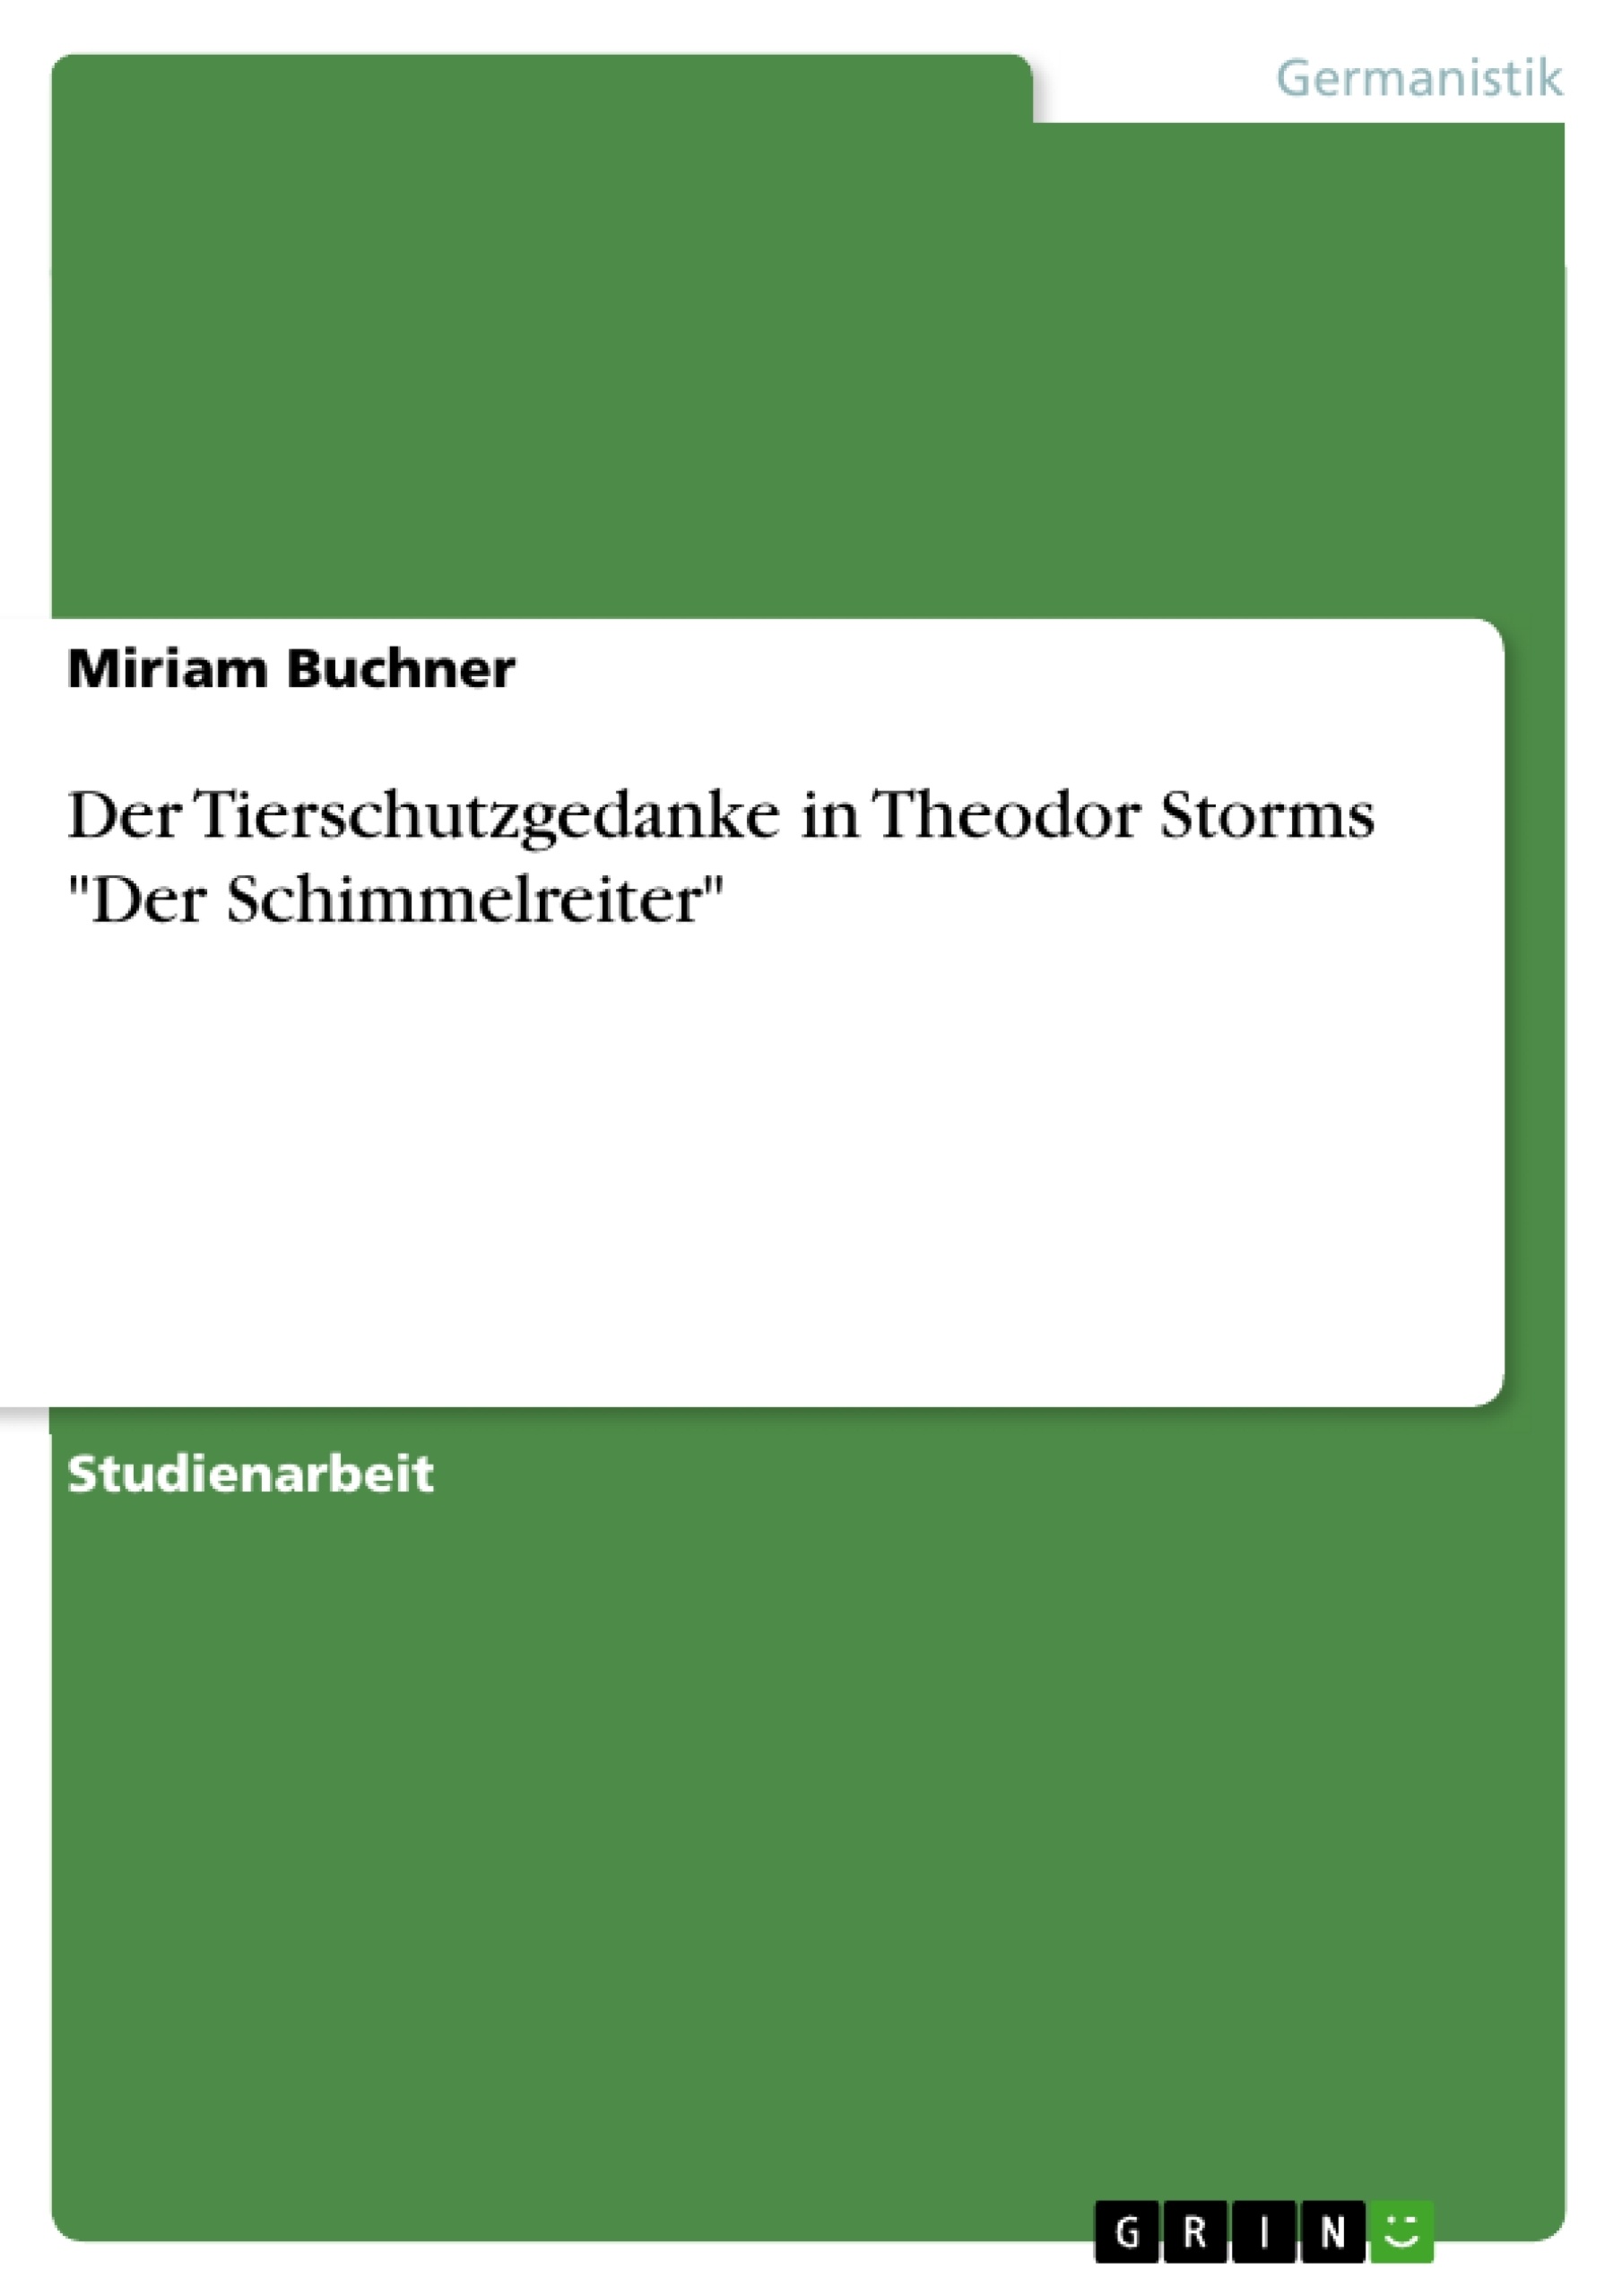 Titre: Der Tierschutzgedanke in Theodor Storms "Der Schimmelreiter"